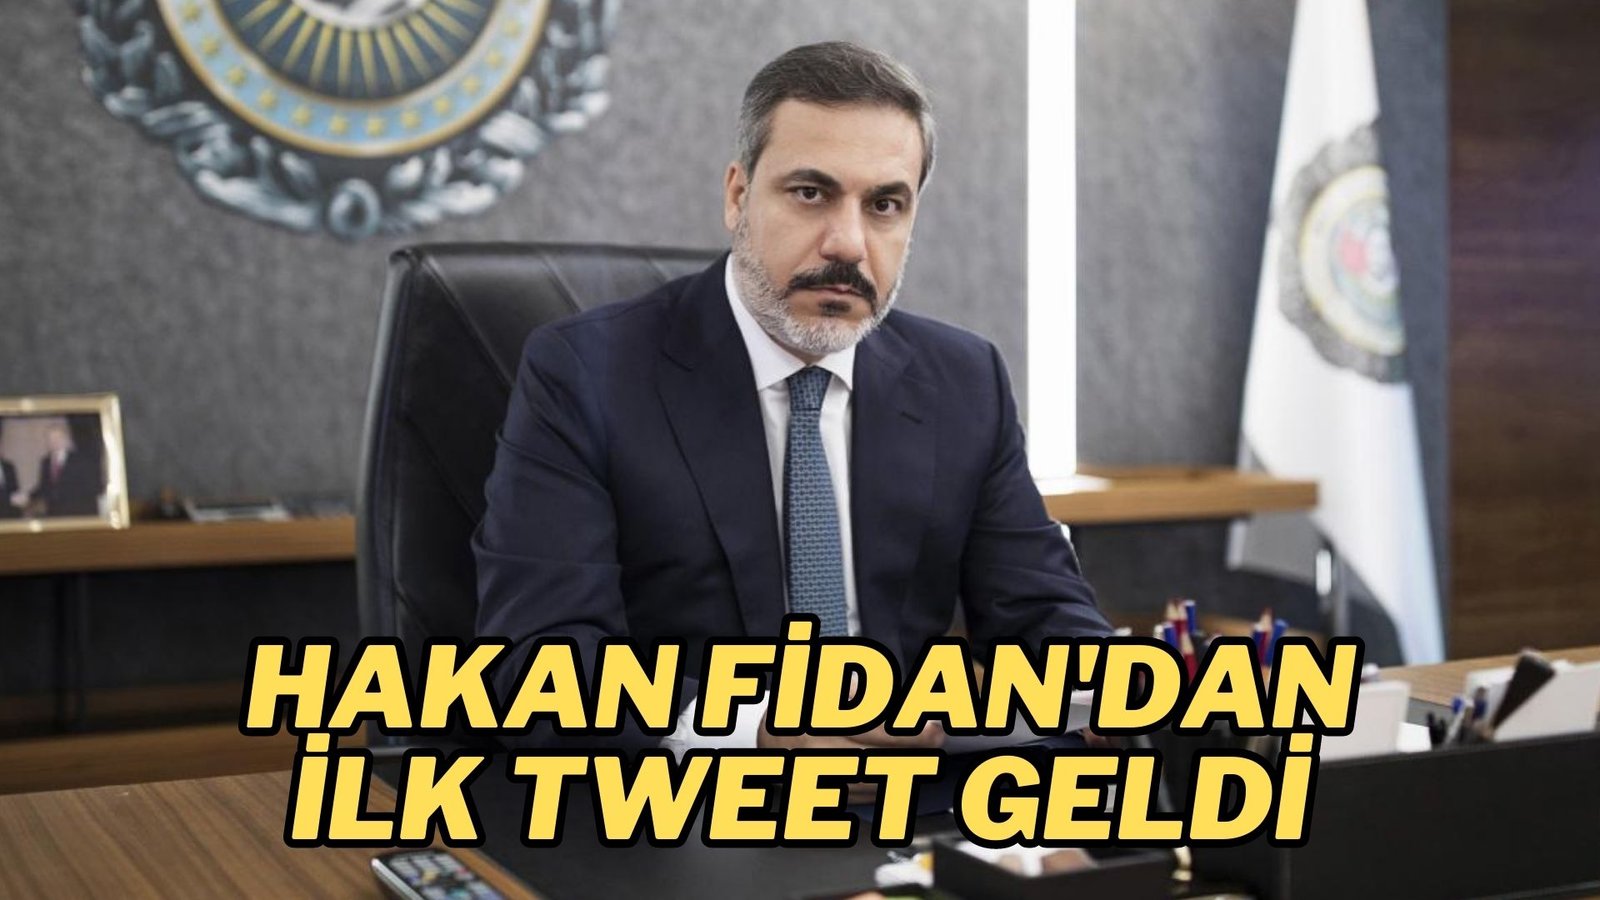 Yeni Dışişleri Bakanı Hakan Fidan'dan ilk tweet